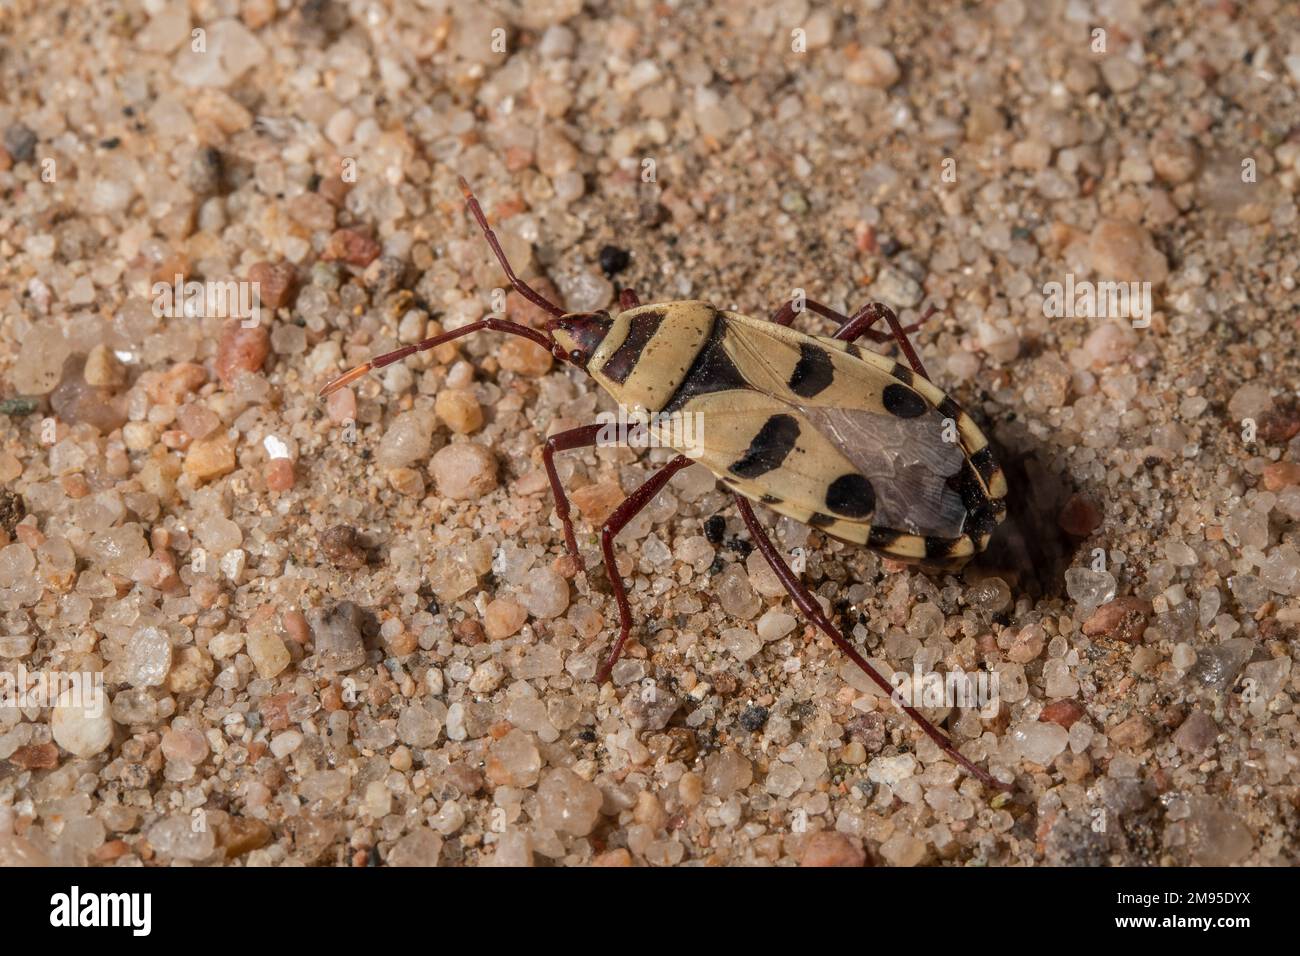 Insecte de Welwitschia, Probergrothius angolensis, Pyrrhocoridae, Hemiptera, désert de Namib, Namibie, Afrique Banque D'Images